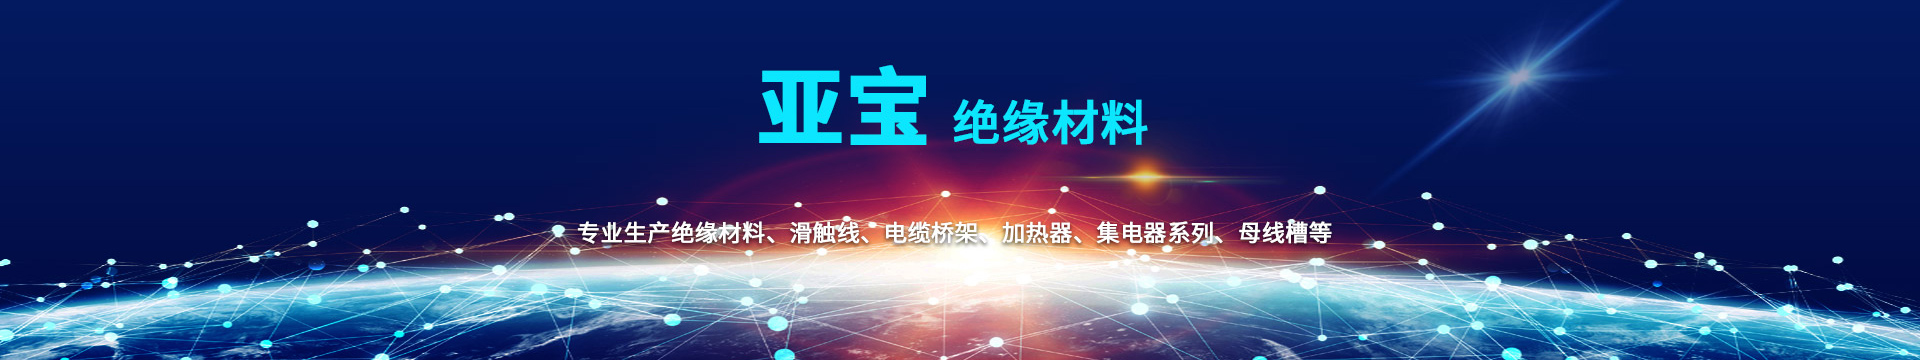 PG电子·(中国平台)官方网站 | 游戏官网_项目6588